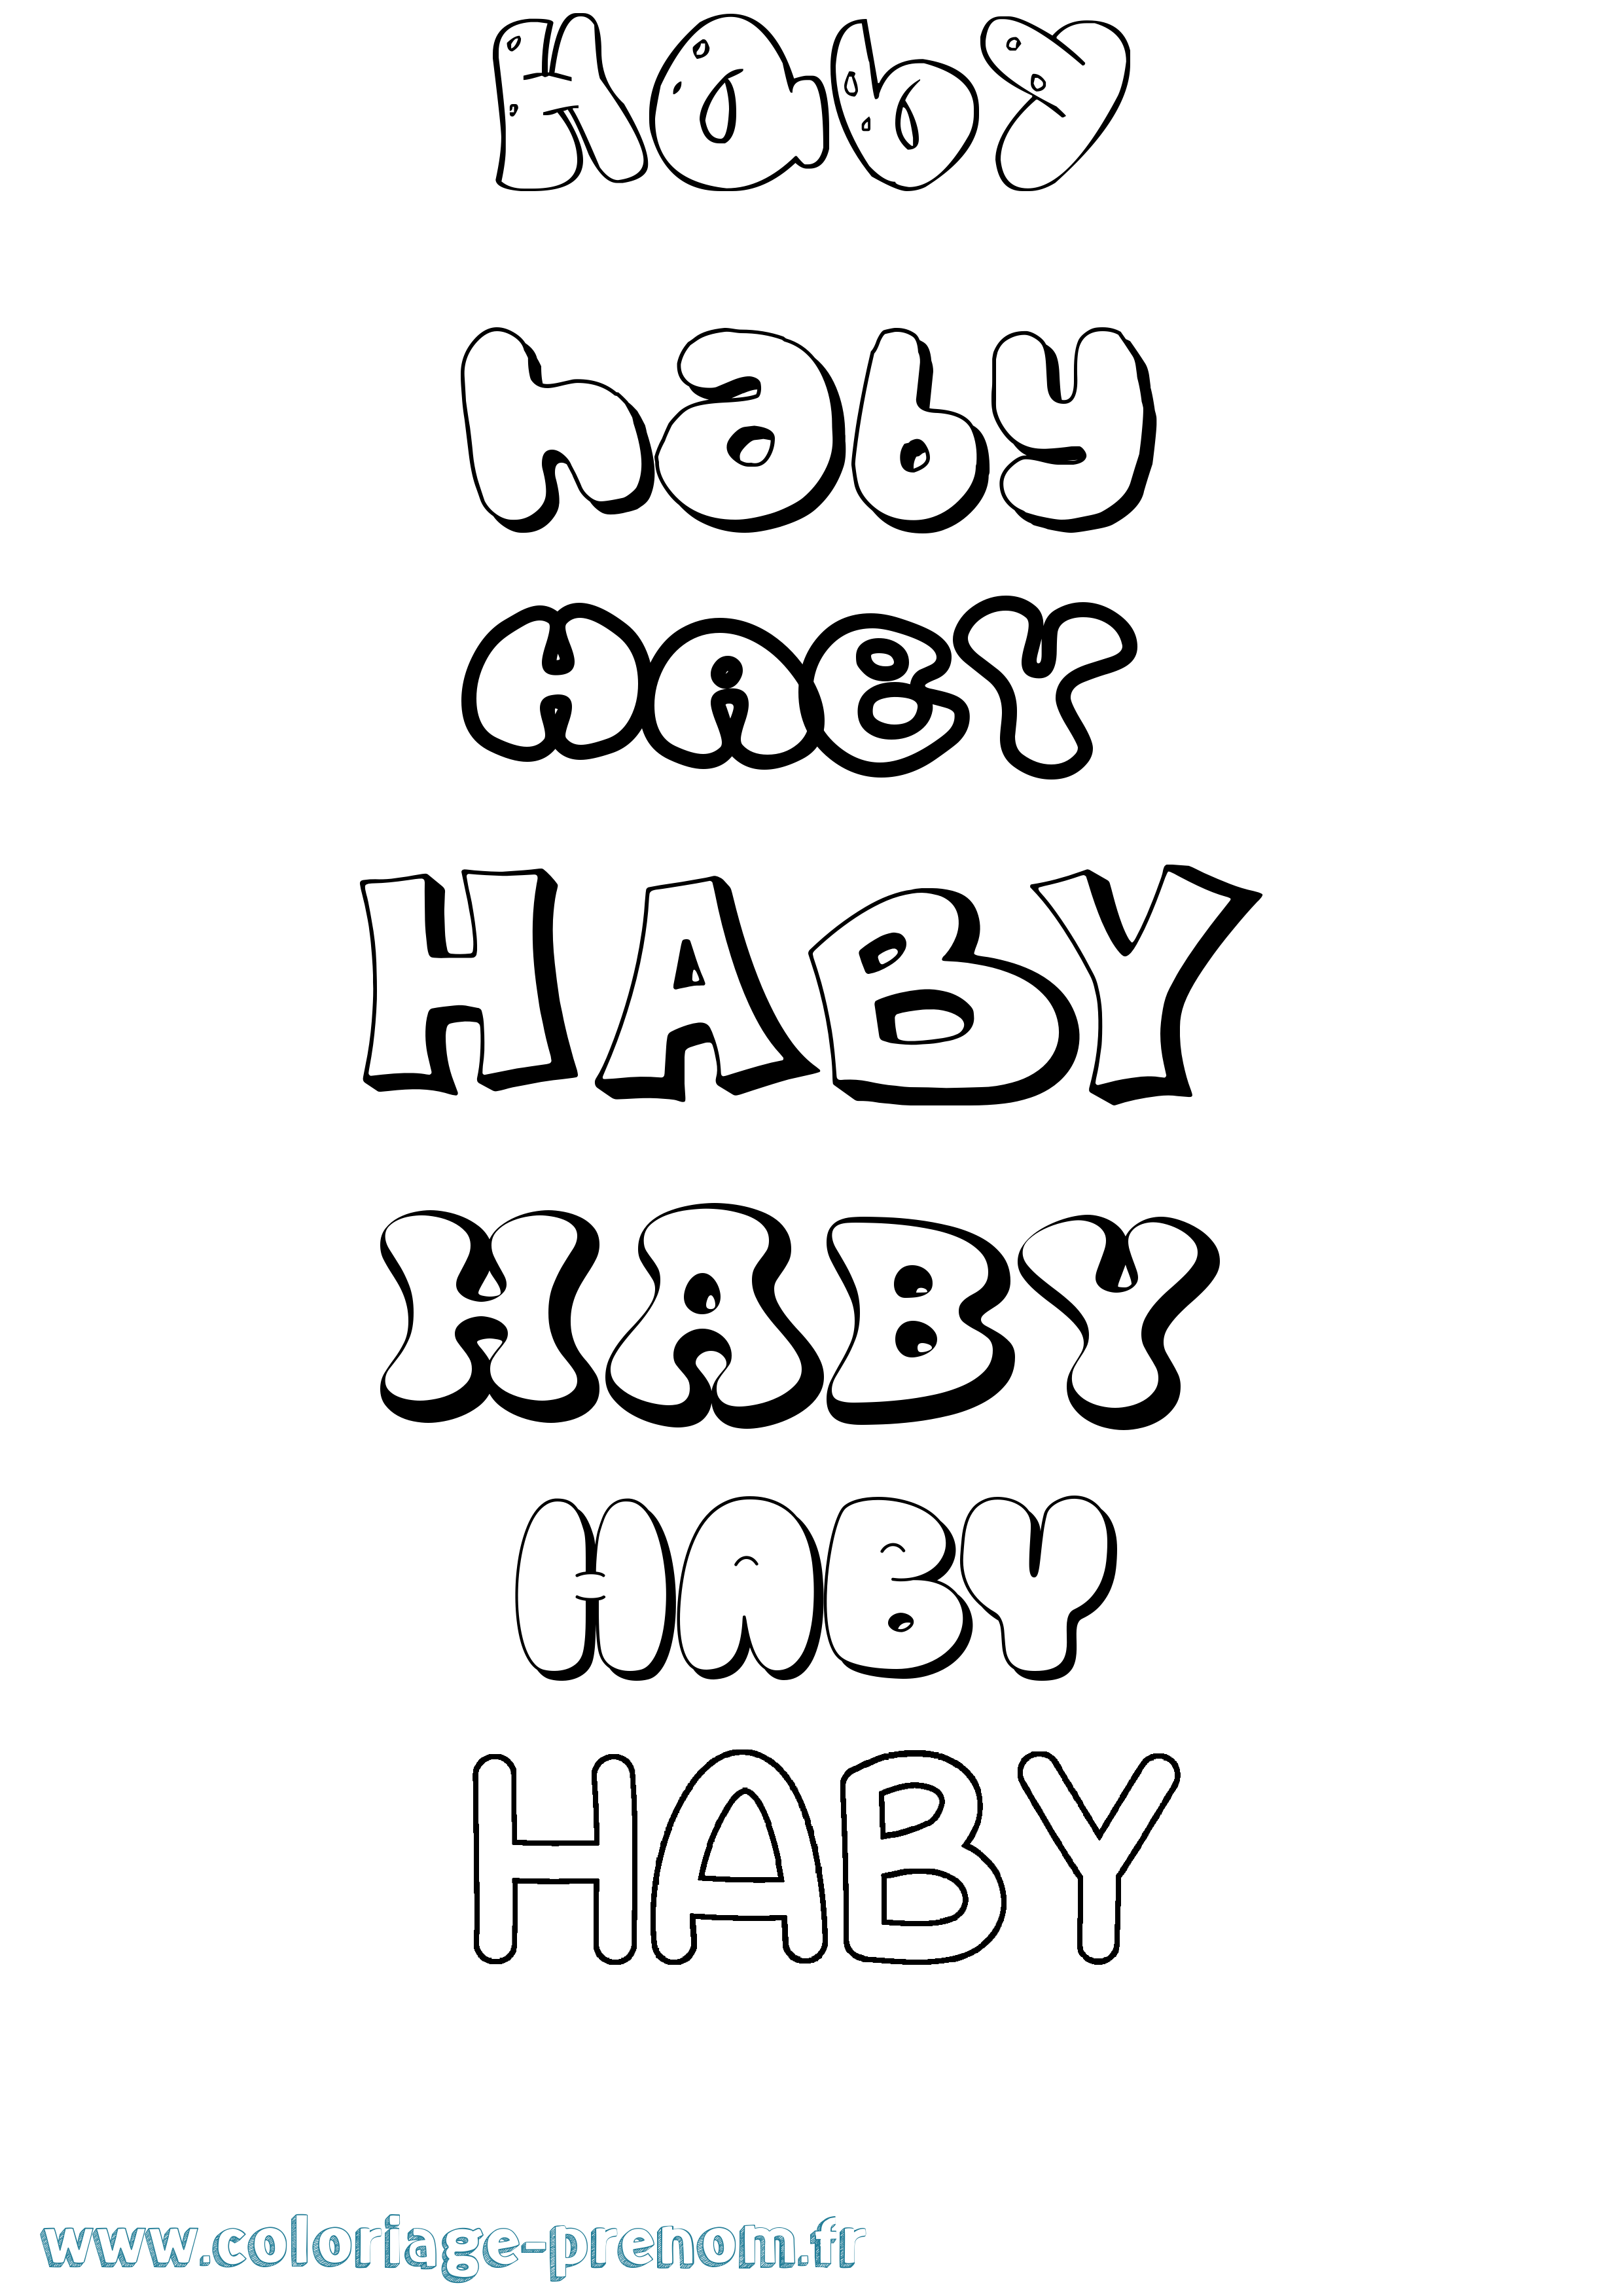 Coloriage prénom Haby Bubble